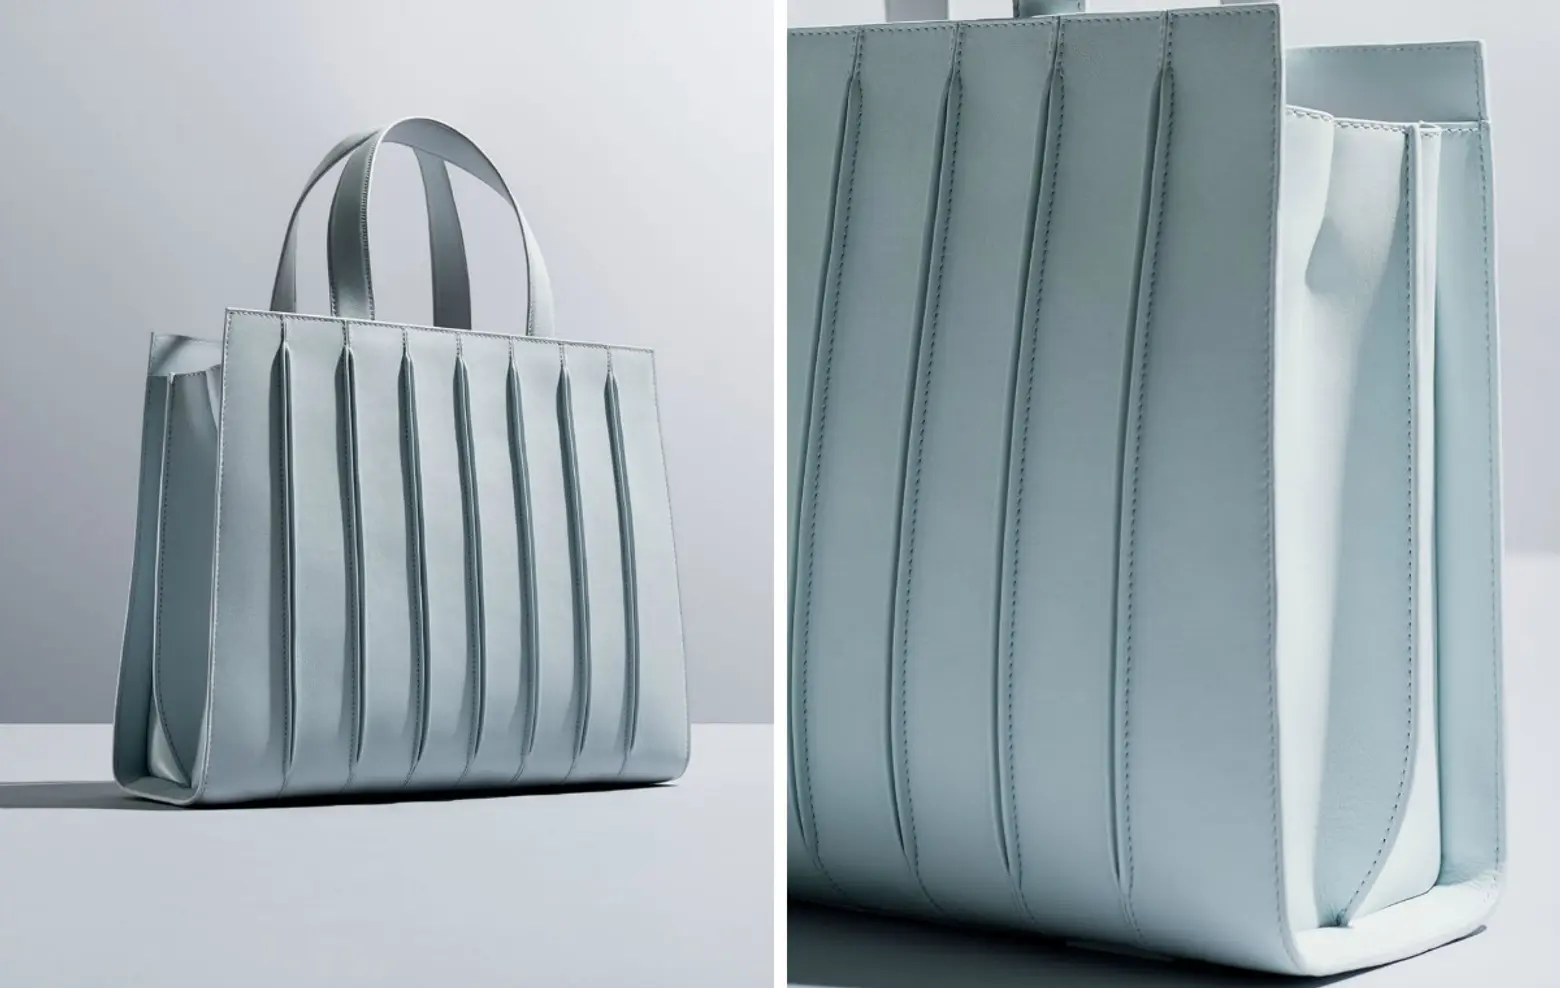 Whitney Bag, Renzo Piano, Max Mara, new Whitney Museum